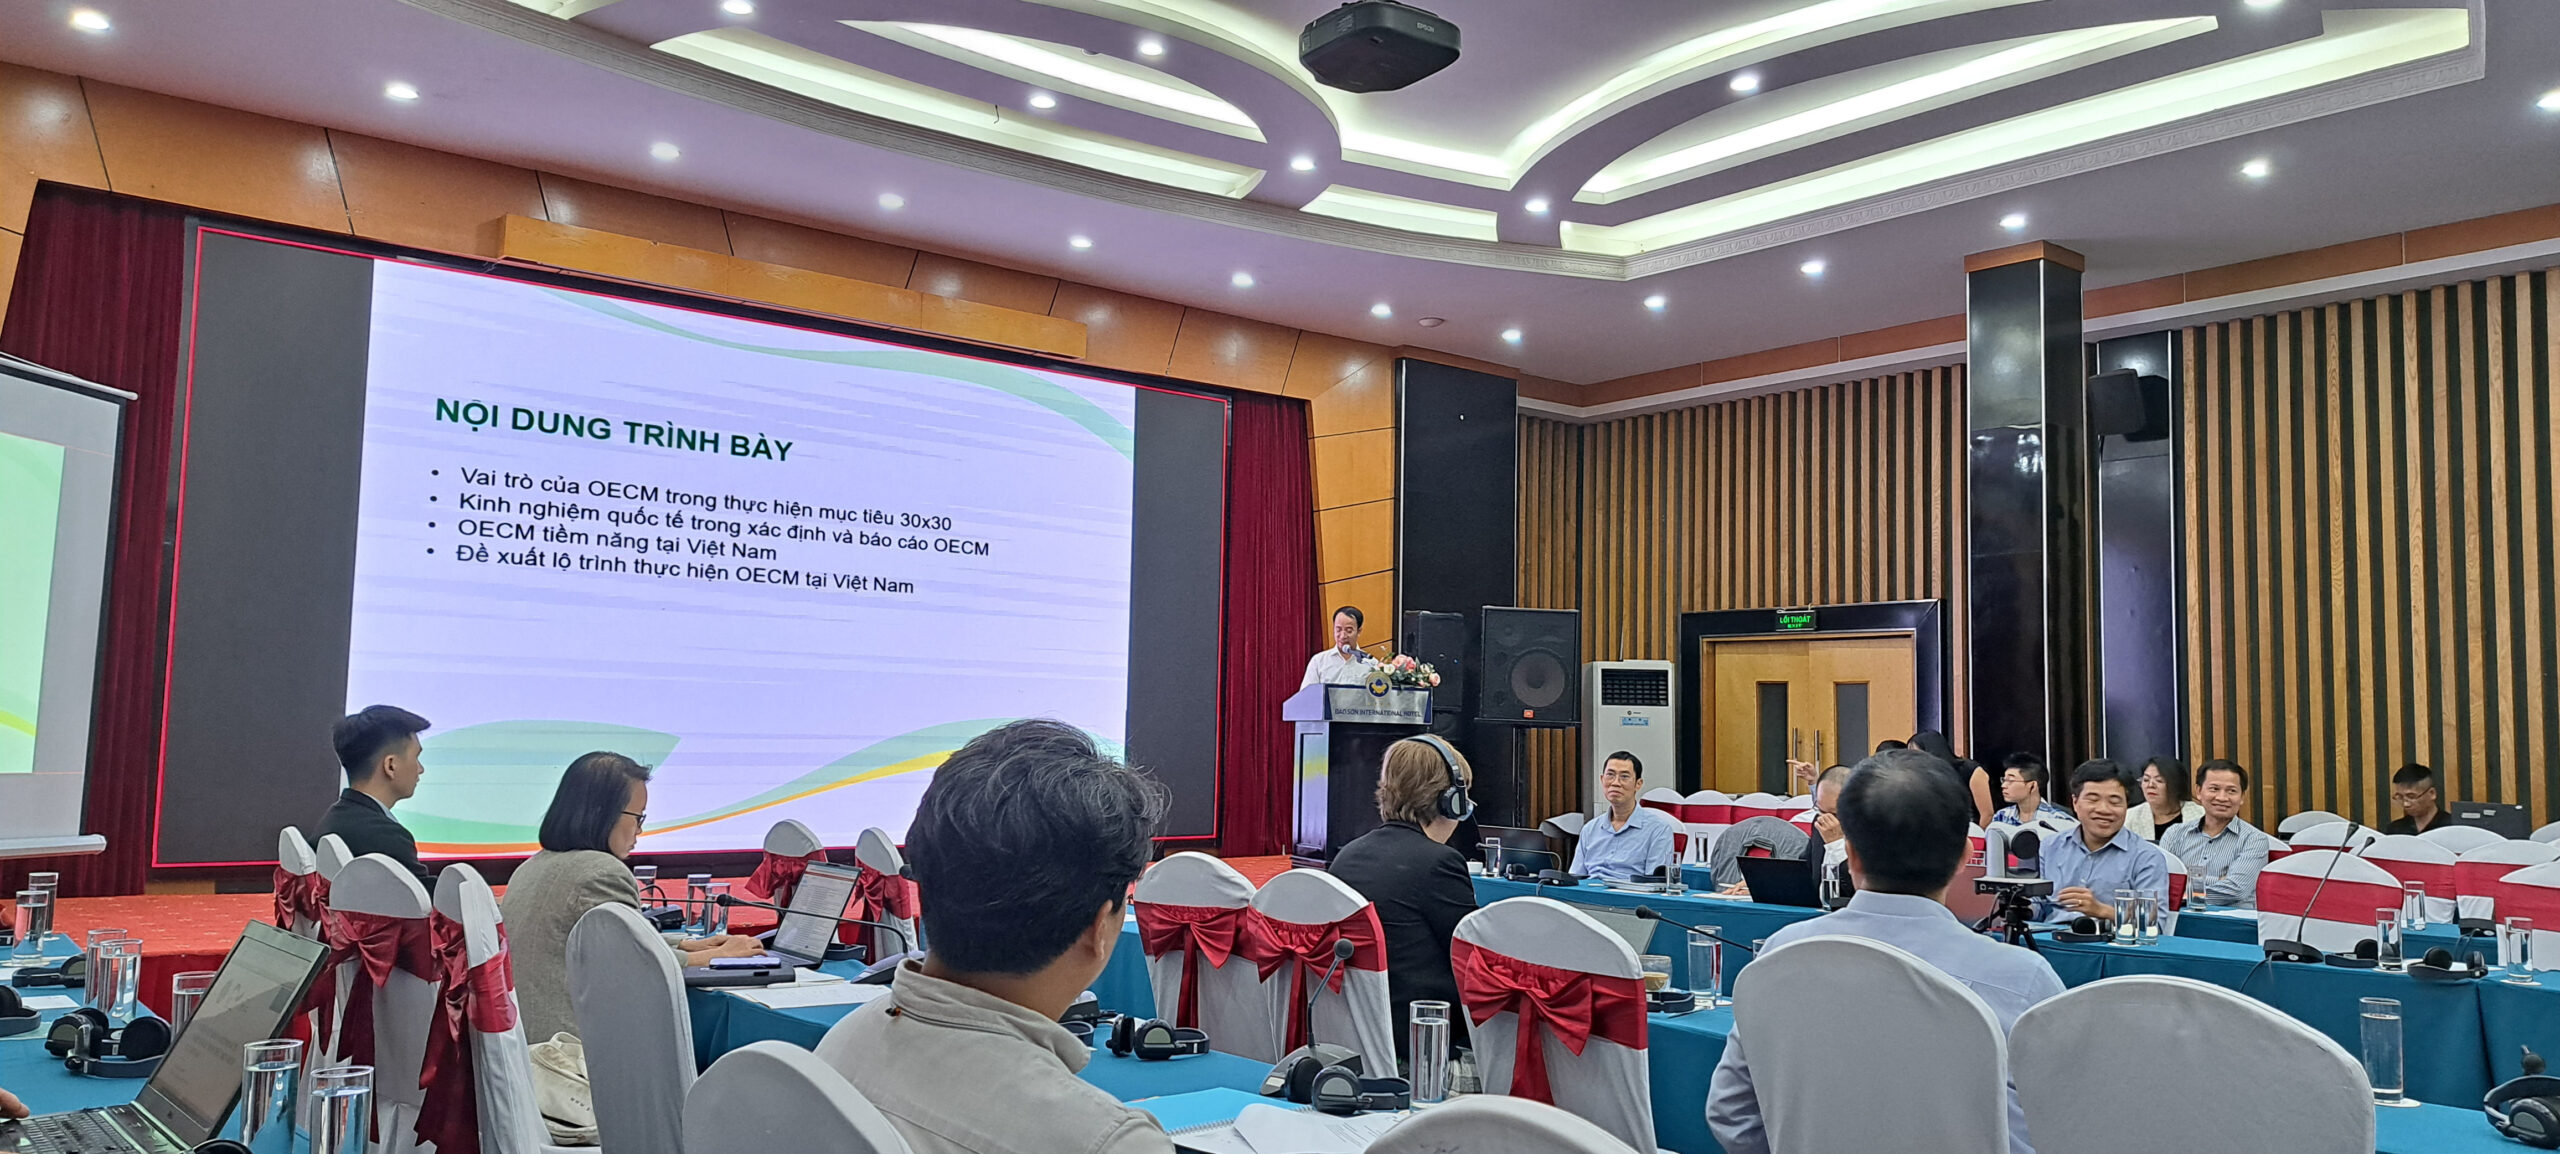 Hội thảo: Đánh giá tiềm năng và định hướng phát triển OECMs tại Việt Nam